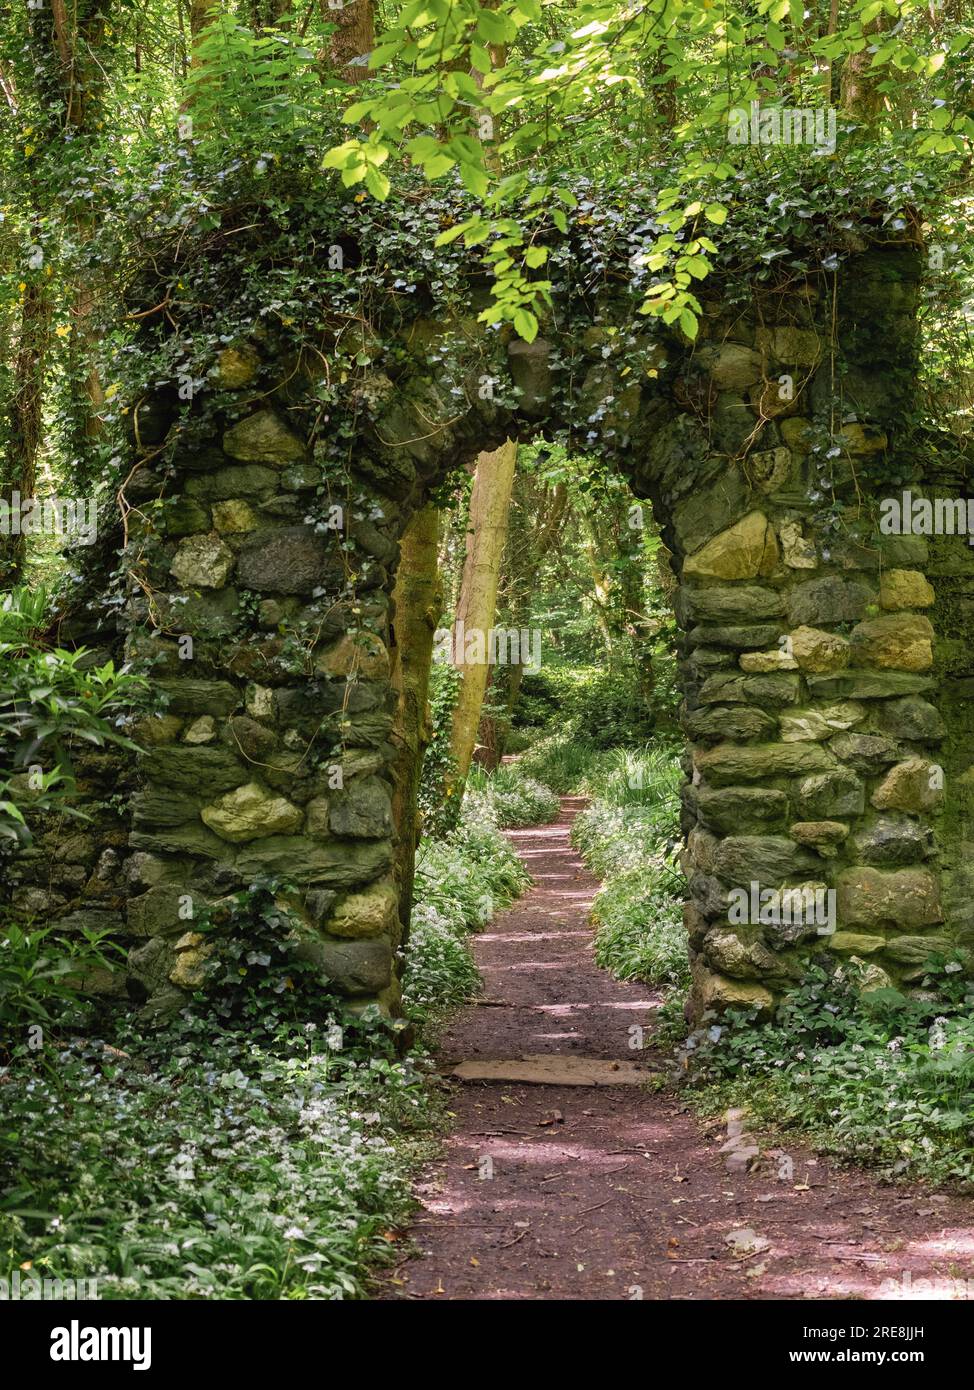 Arco a parete in pietra sopra un sentiero boschivo in primavera con aglio selvatico in fiore. Conosciuto anche come Penrhos Country Park. Penrhos Coastal Park, Isola di Anglesey Foto Stock